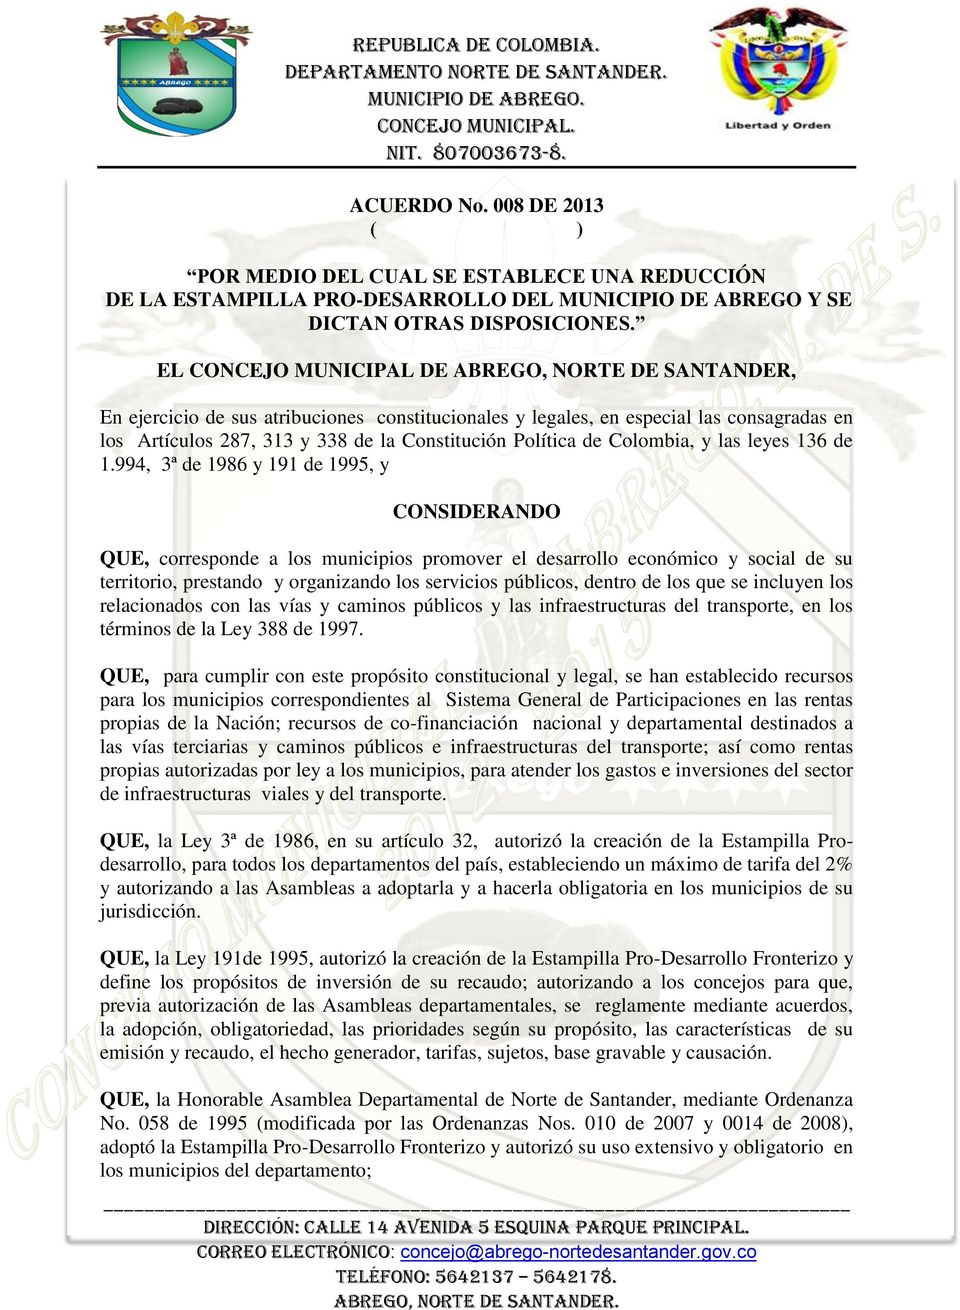 Política de Colombia, y las leyes 136 de 1.